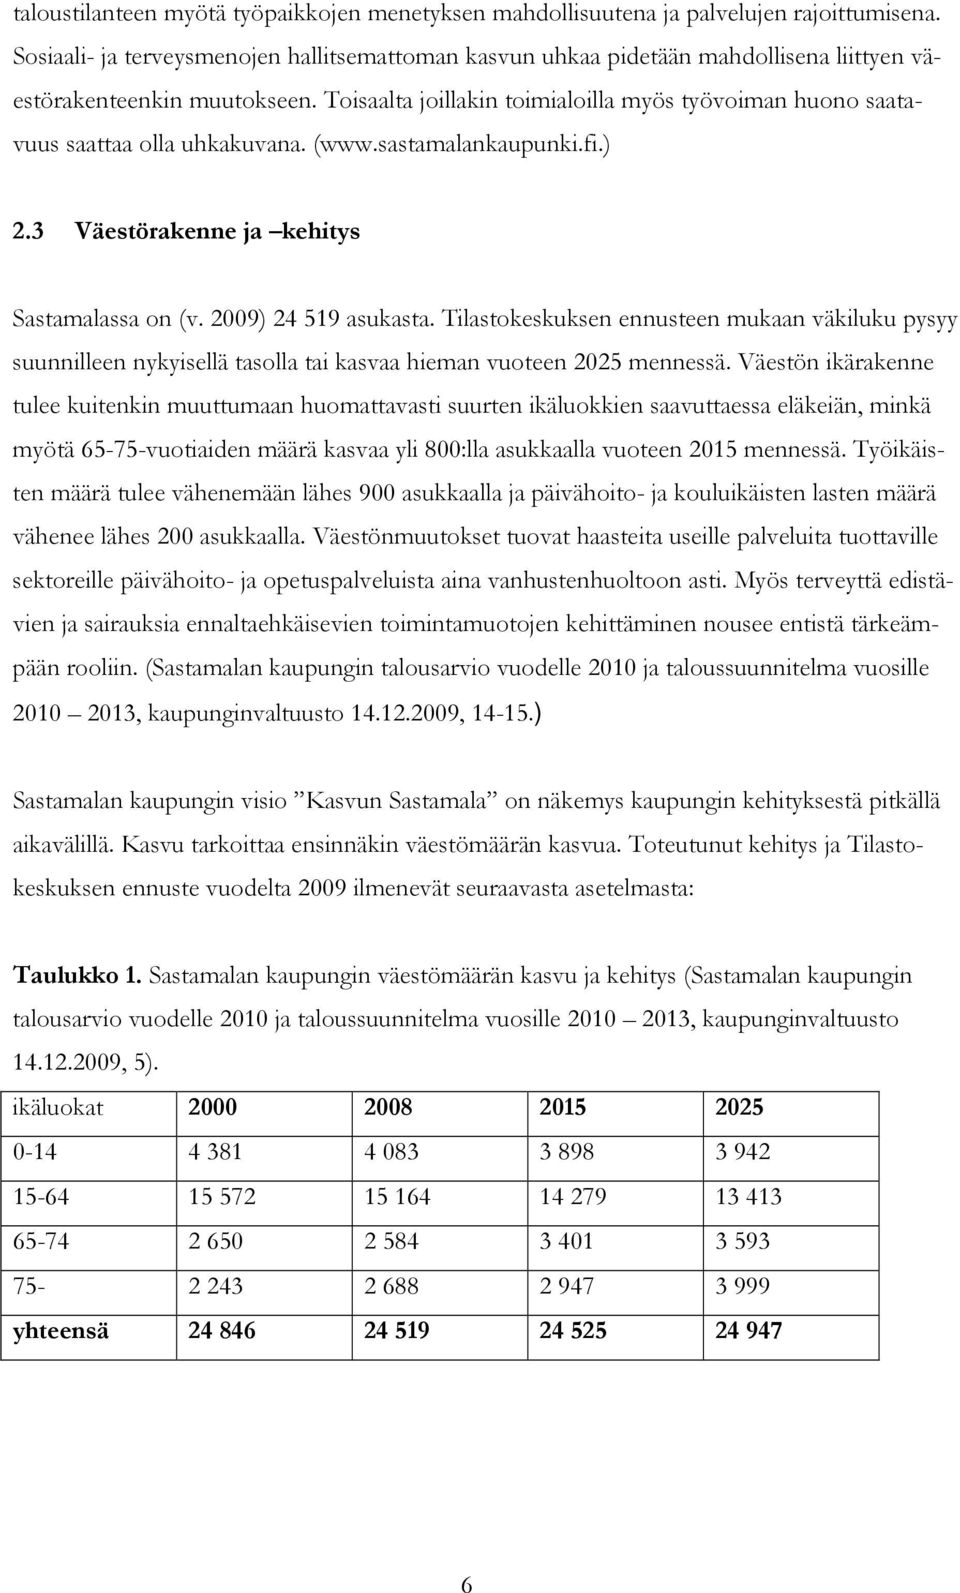 Toisaalta joillakin toimialoilla myös työvoiman huono saatavuus saattaa olla uhkakuvana. (www.sastamalankaupunki.fi.) 2.3 Väestörakenne ja kehitys Sastamalassa on (v. 2009) 24 519 asukasta.